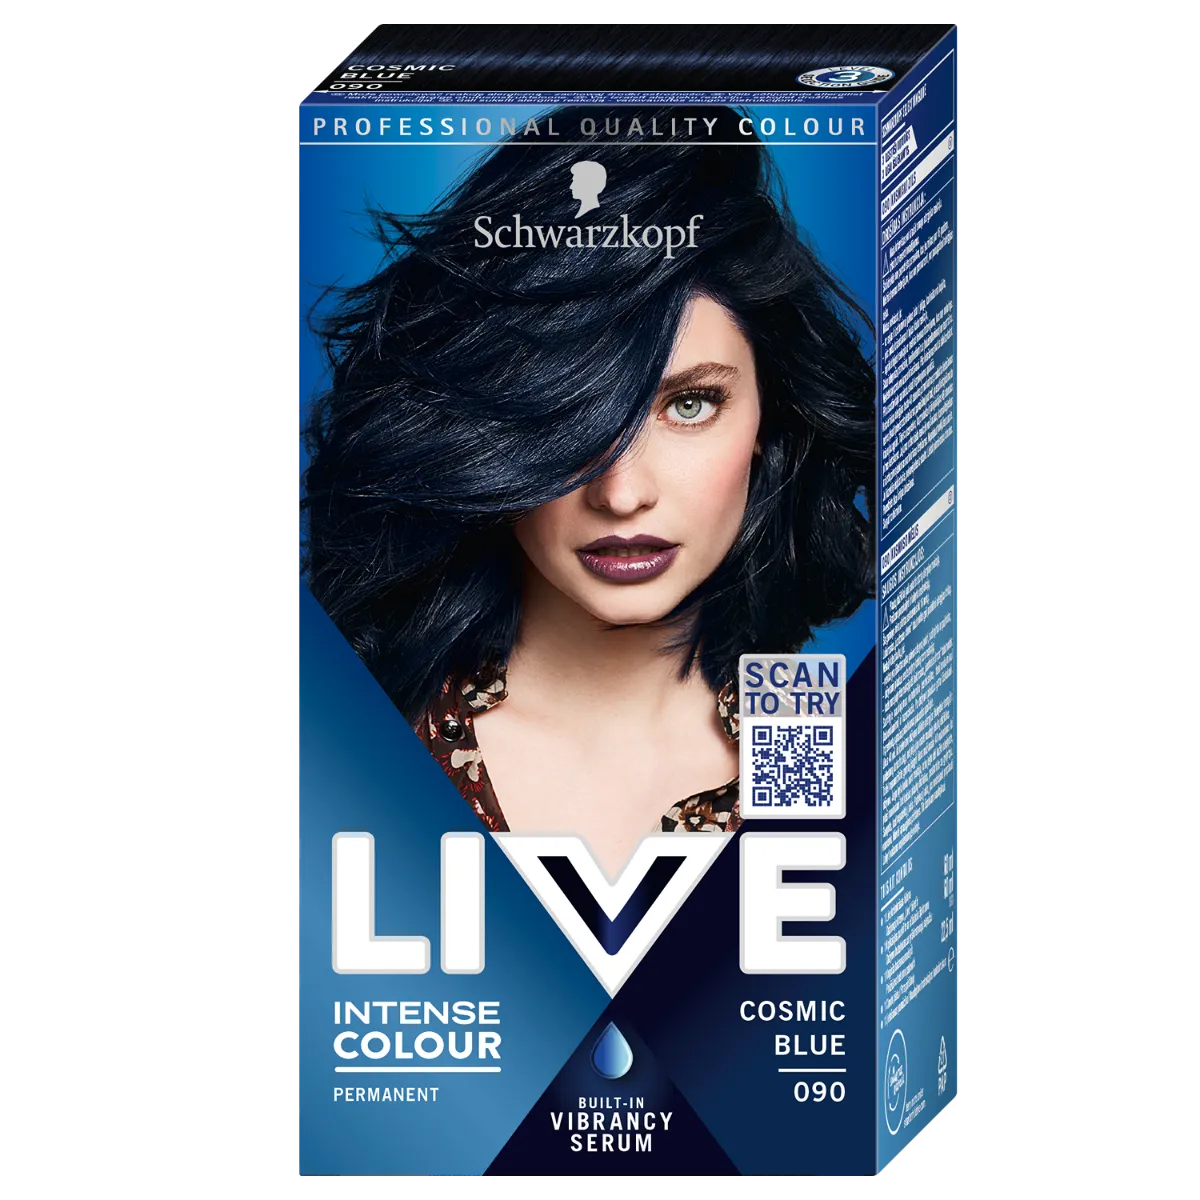 Schwarzkopf Live Intense Colour farba do włosów 90 Cosmic Blue, 1 szt.